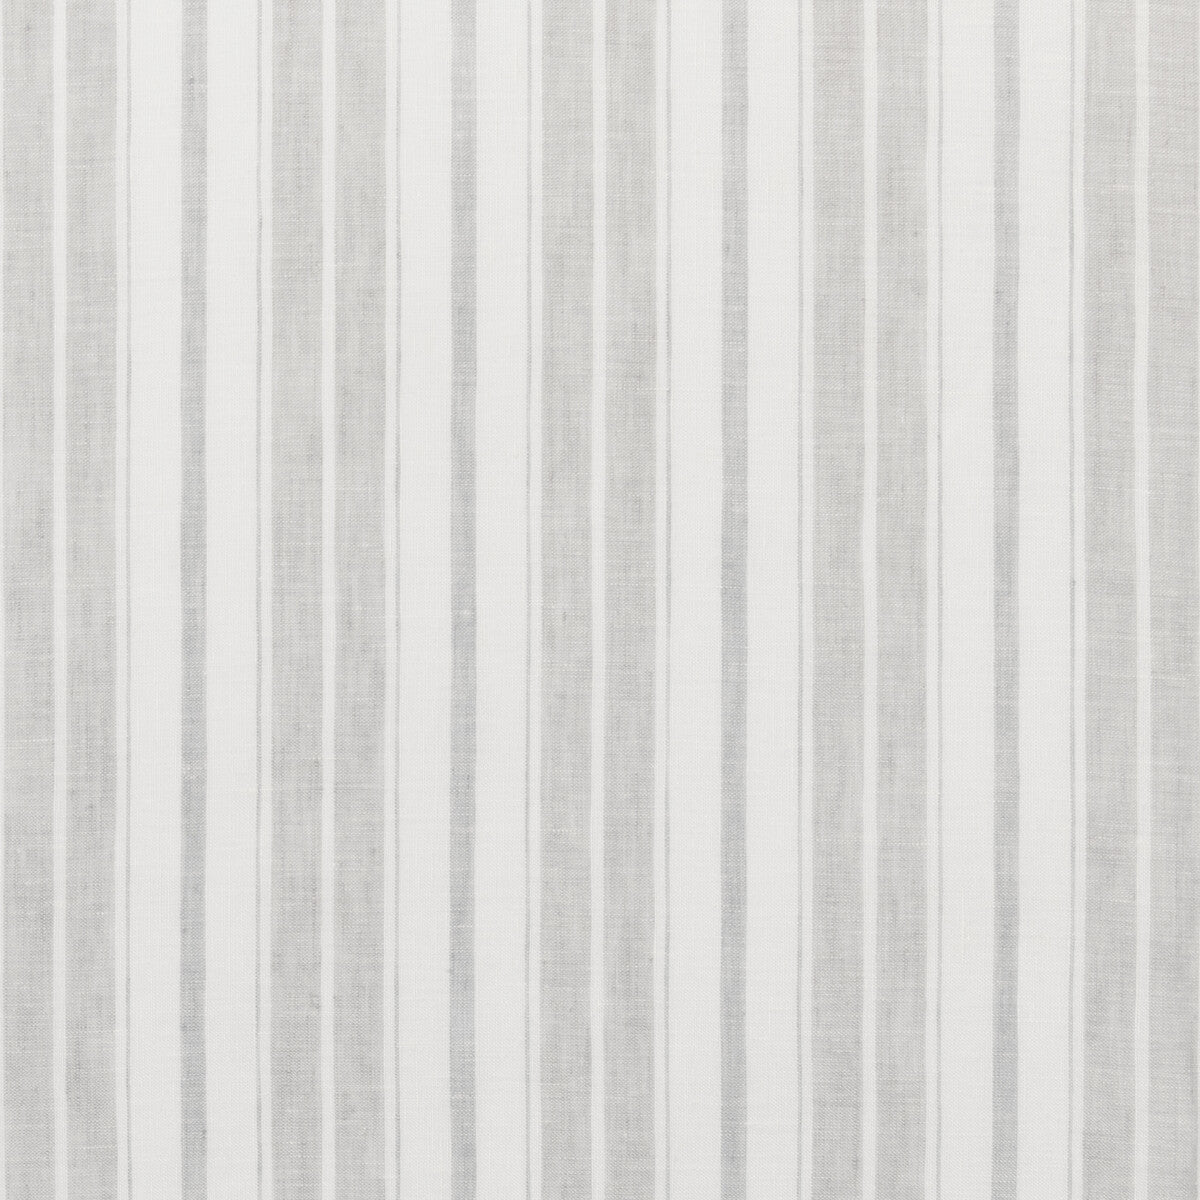 Kravet Design fabric in 4841-11 color - pattern 4841.11.0 - by Kravet Design